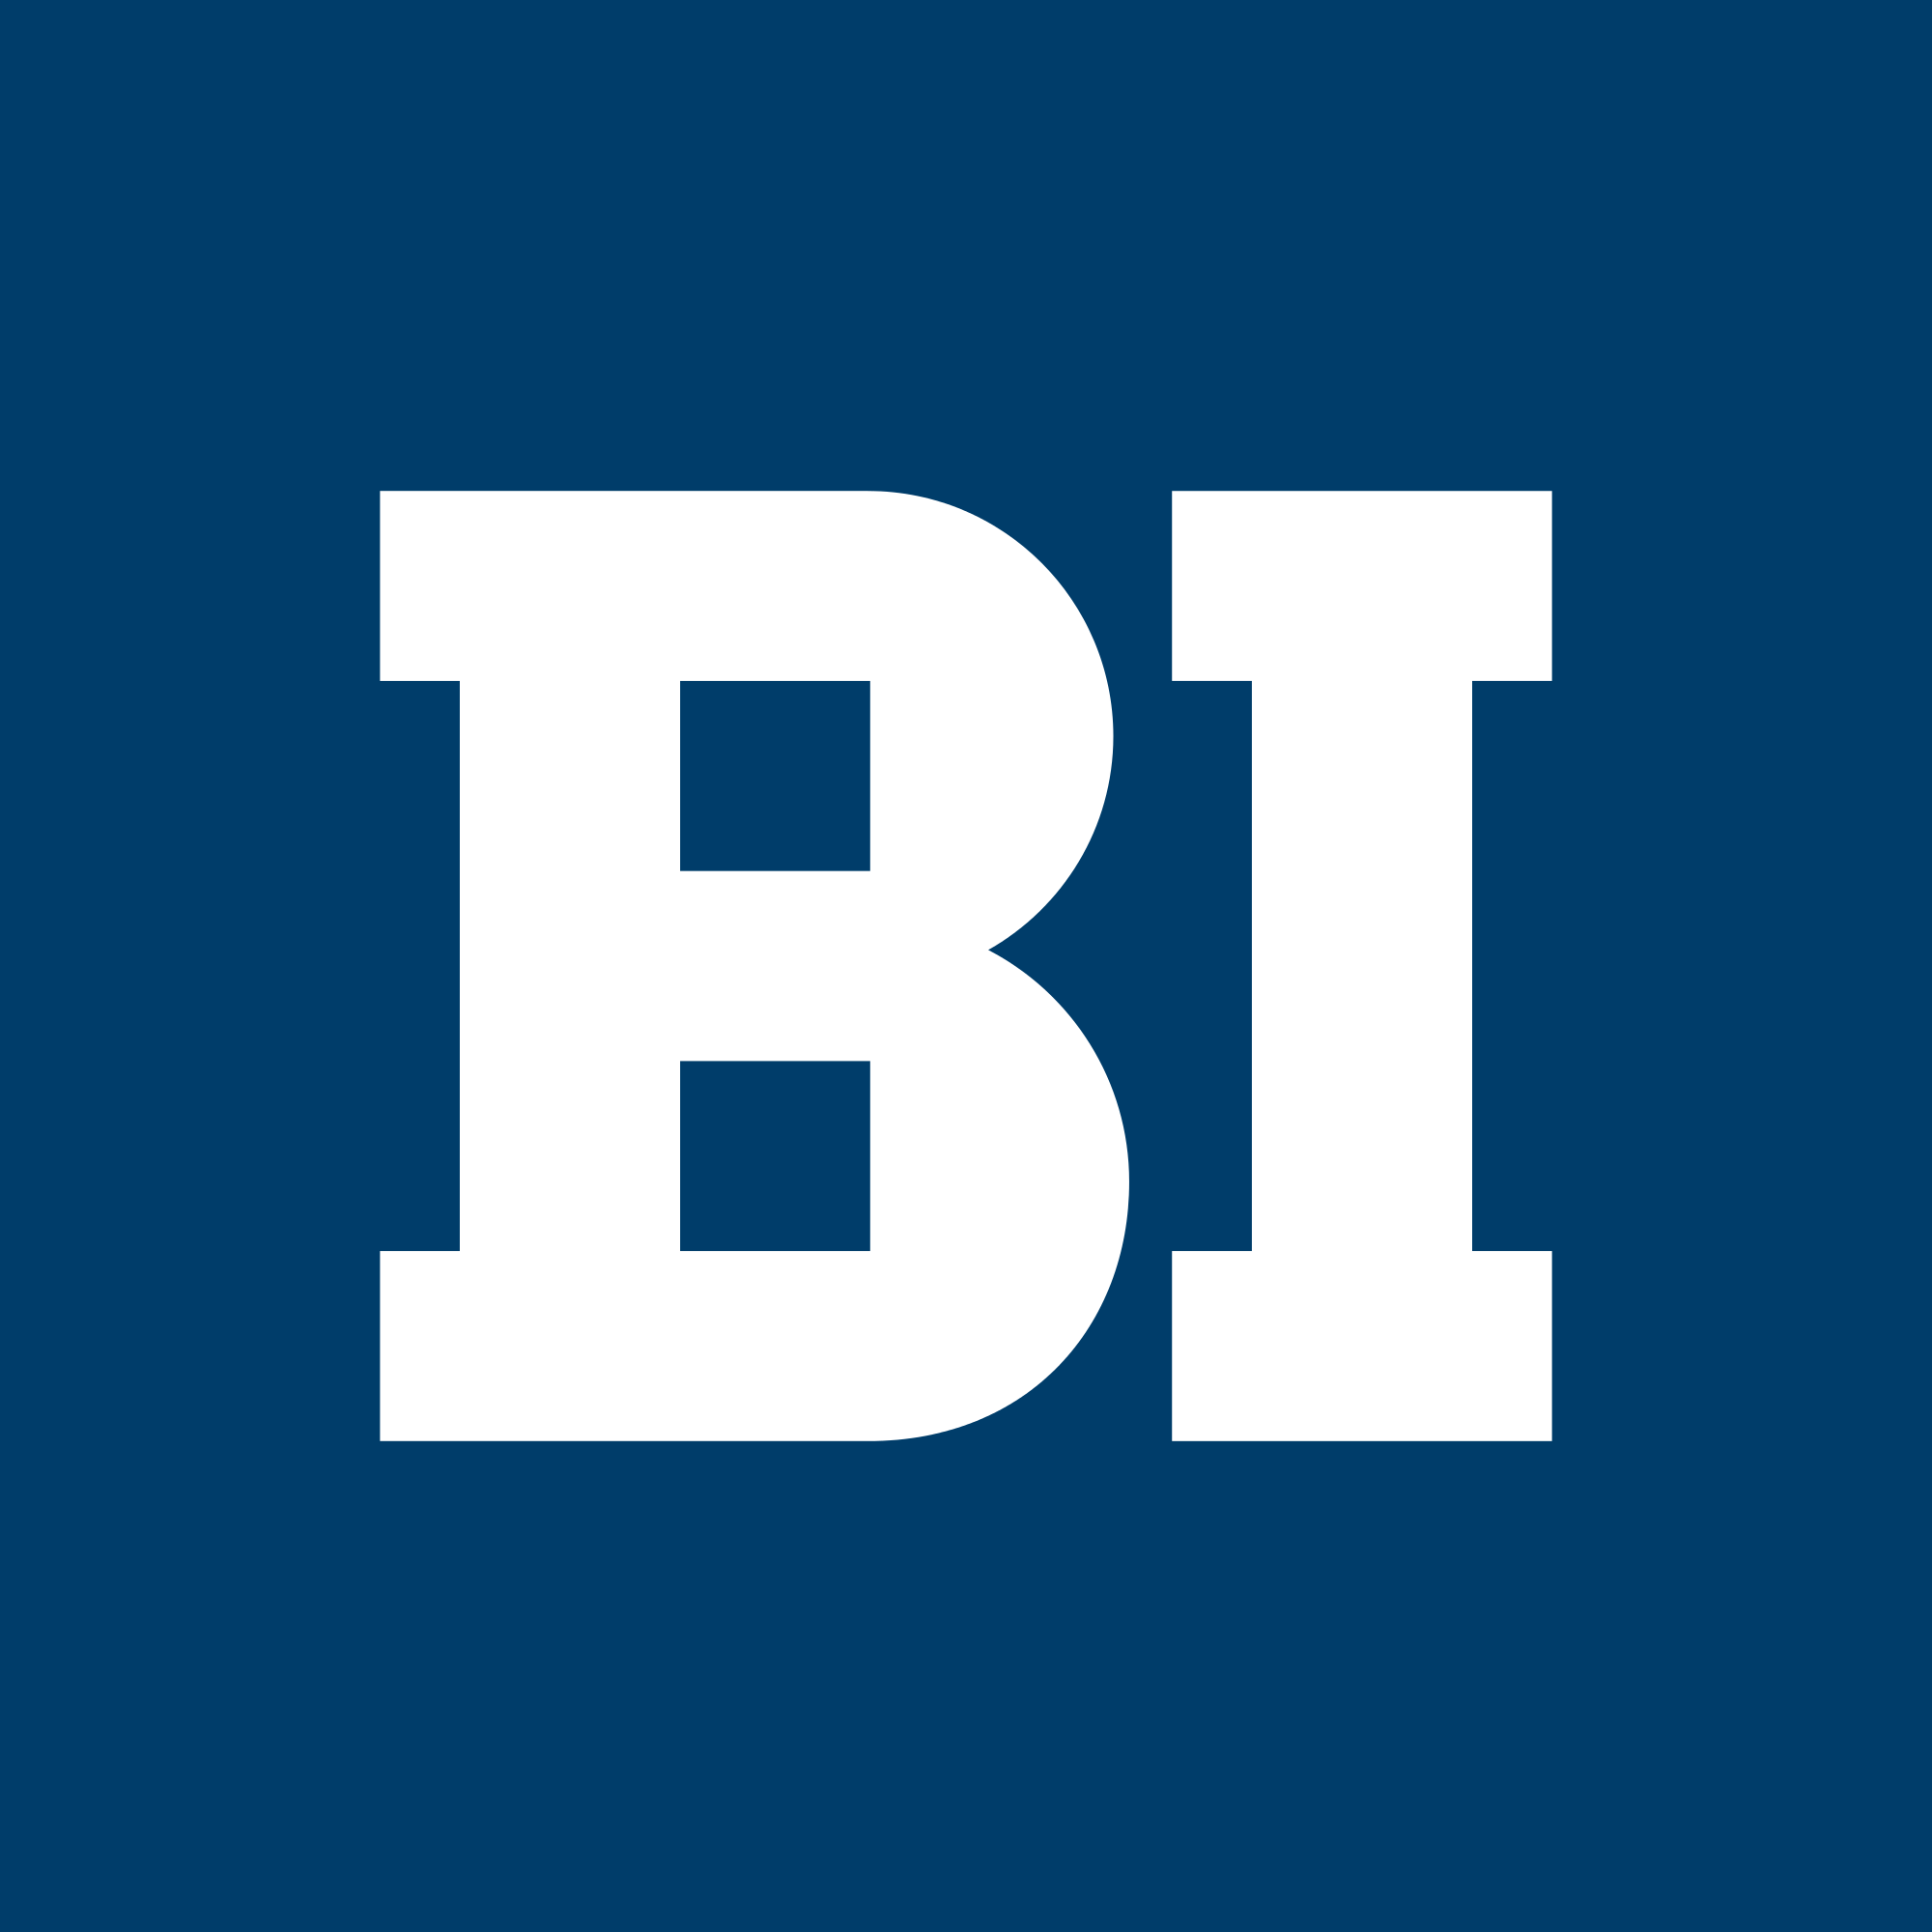 Bi file. Bi. Би лого. Bi Group лого. Business Intelligence логотип.